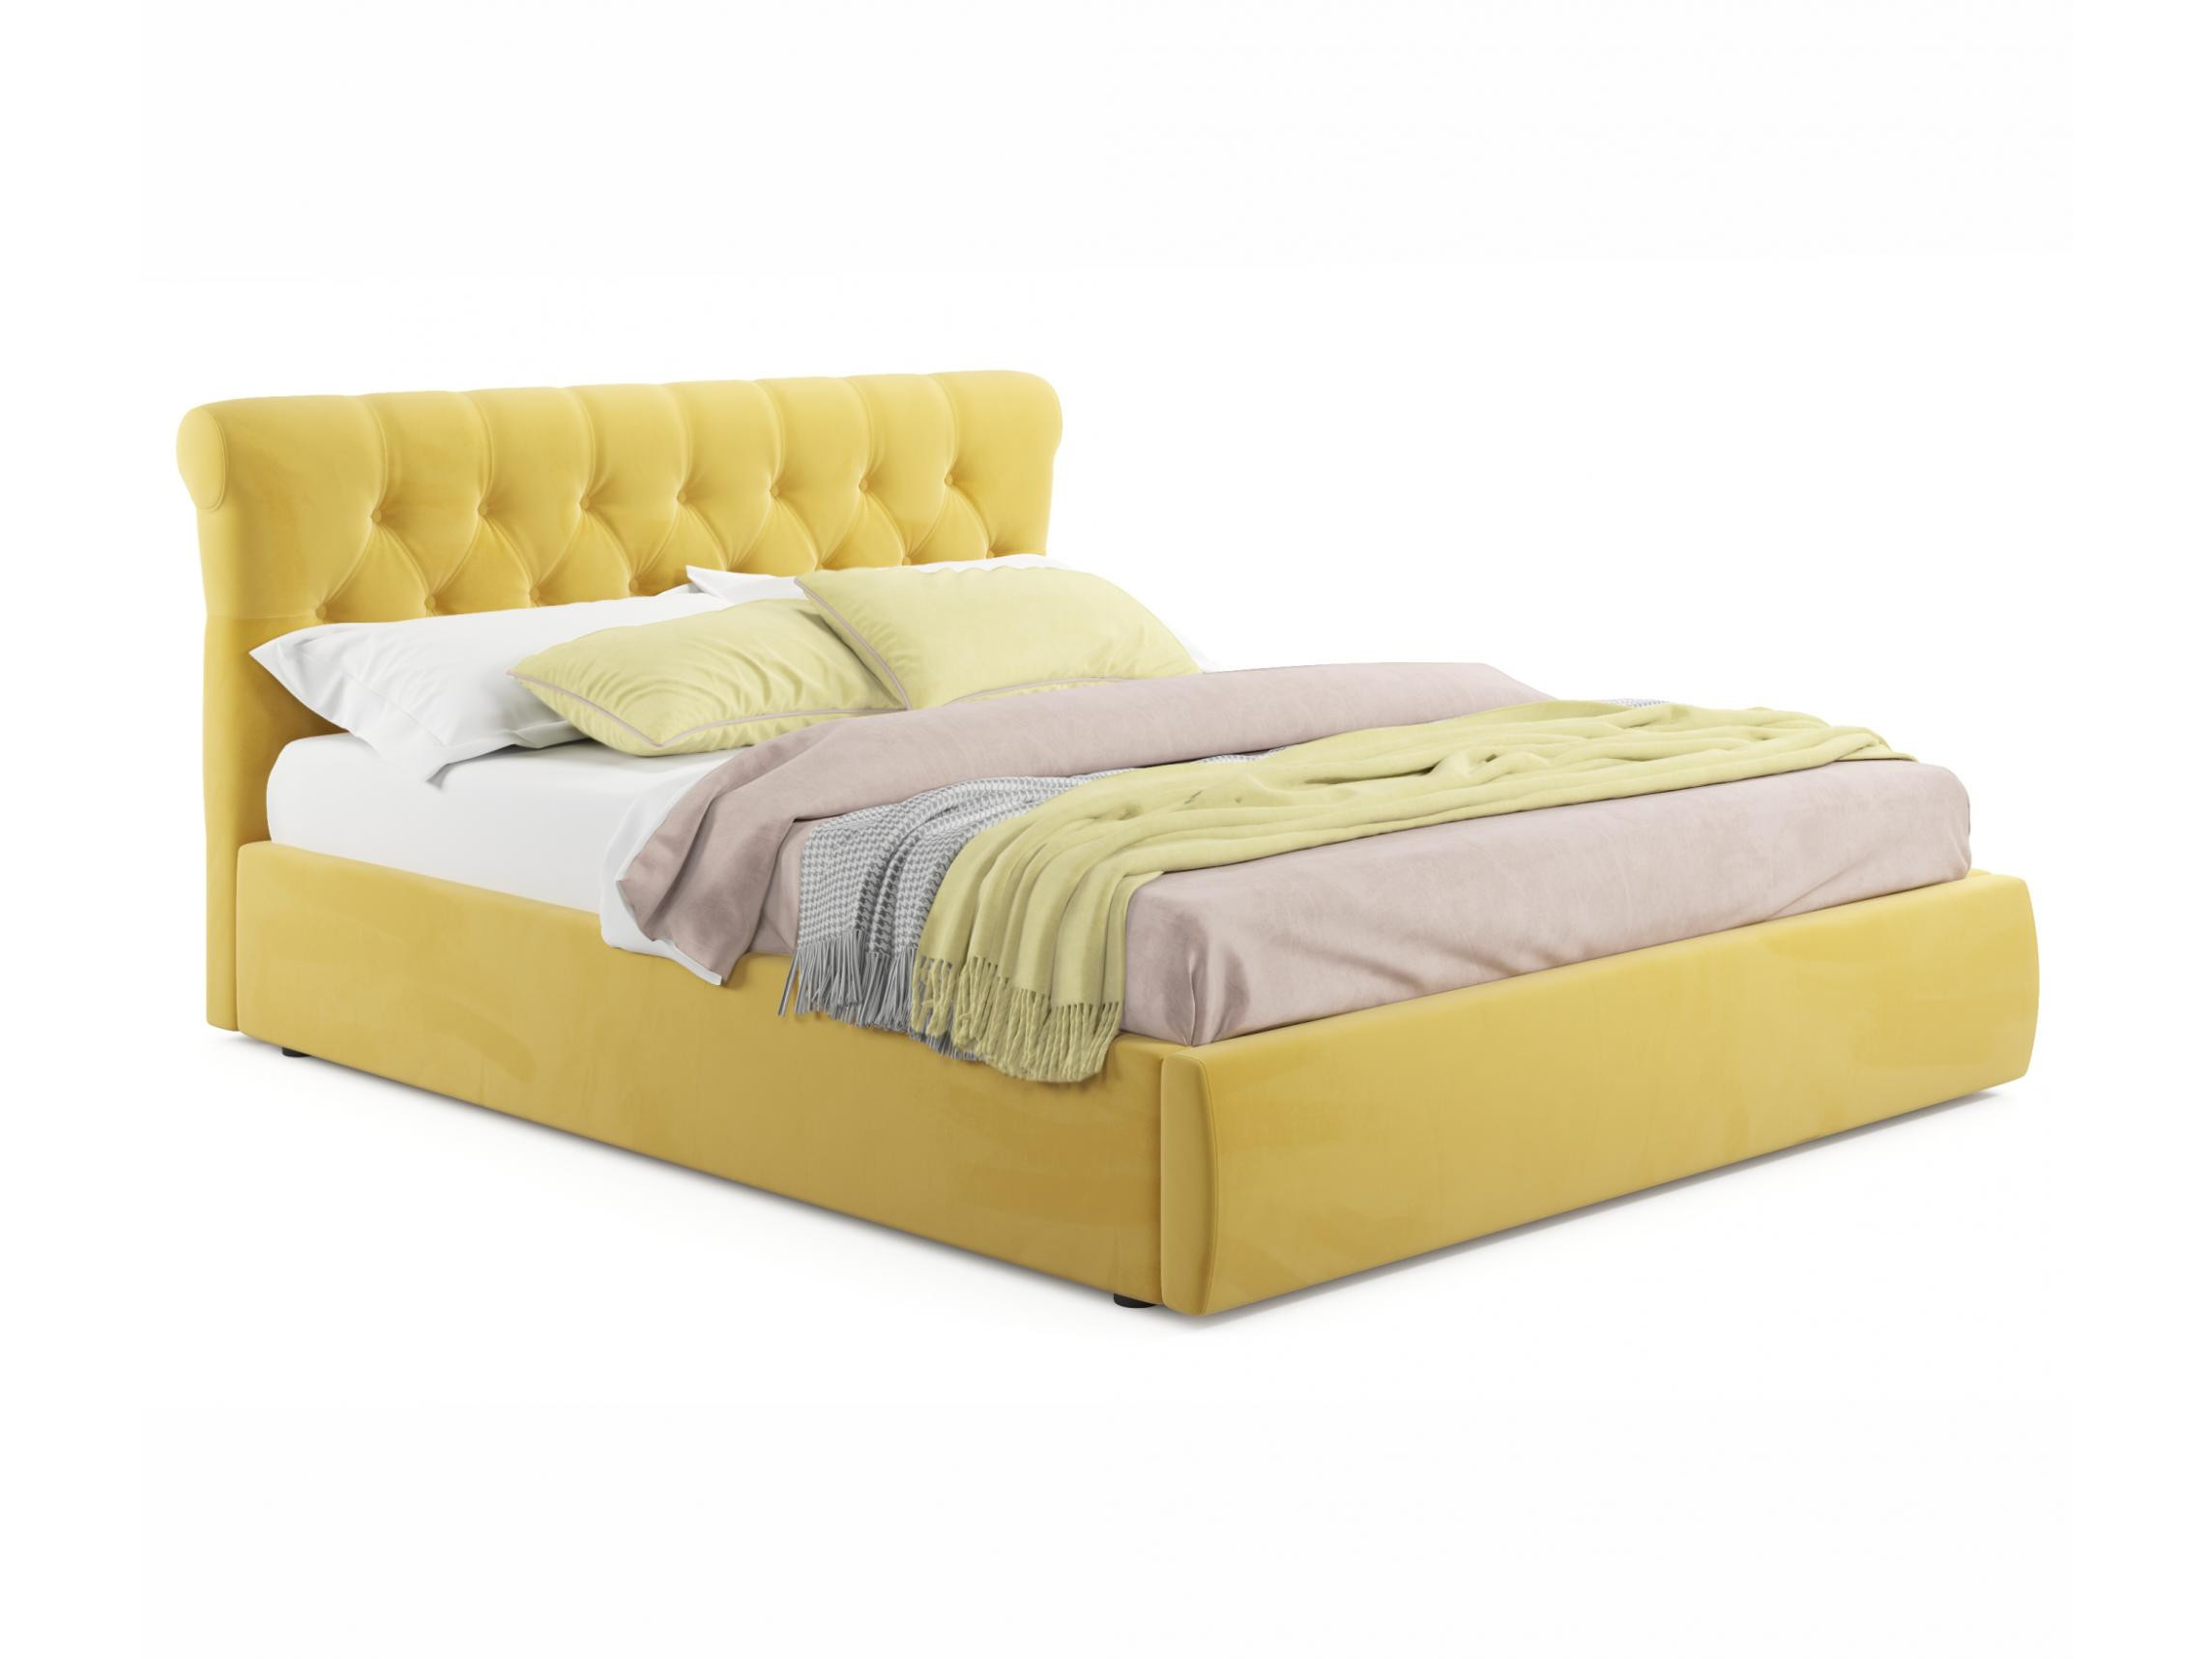 Мягкая кровать Ameli 1600 желтая с подъемным механизмом с матрасом АСТРА желтый, Желтый, Велюр, ДСП мягкая кровать ameli 1600 желтая с подъемным механизмом желтый желтый велюр дсп